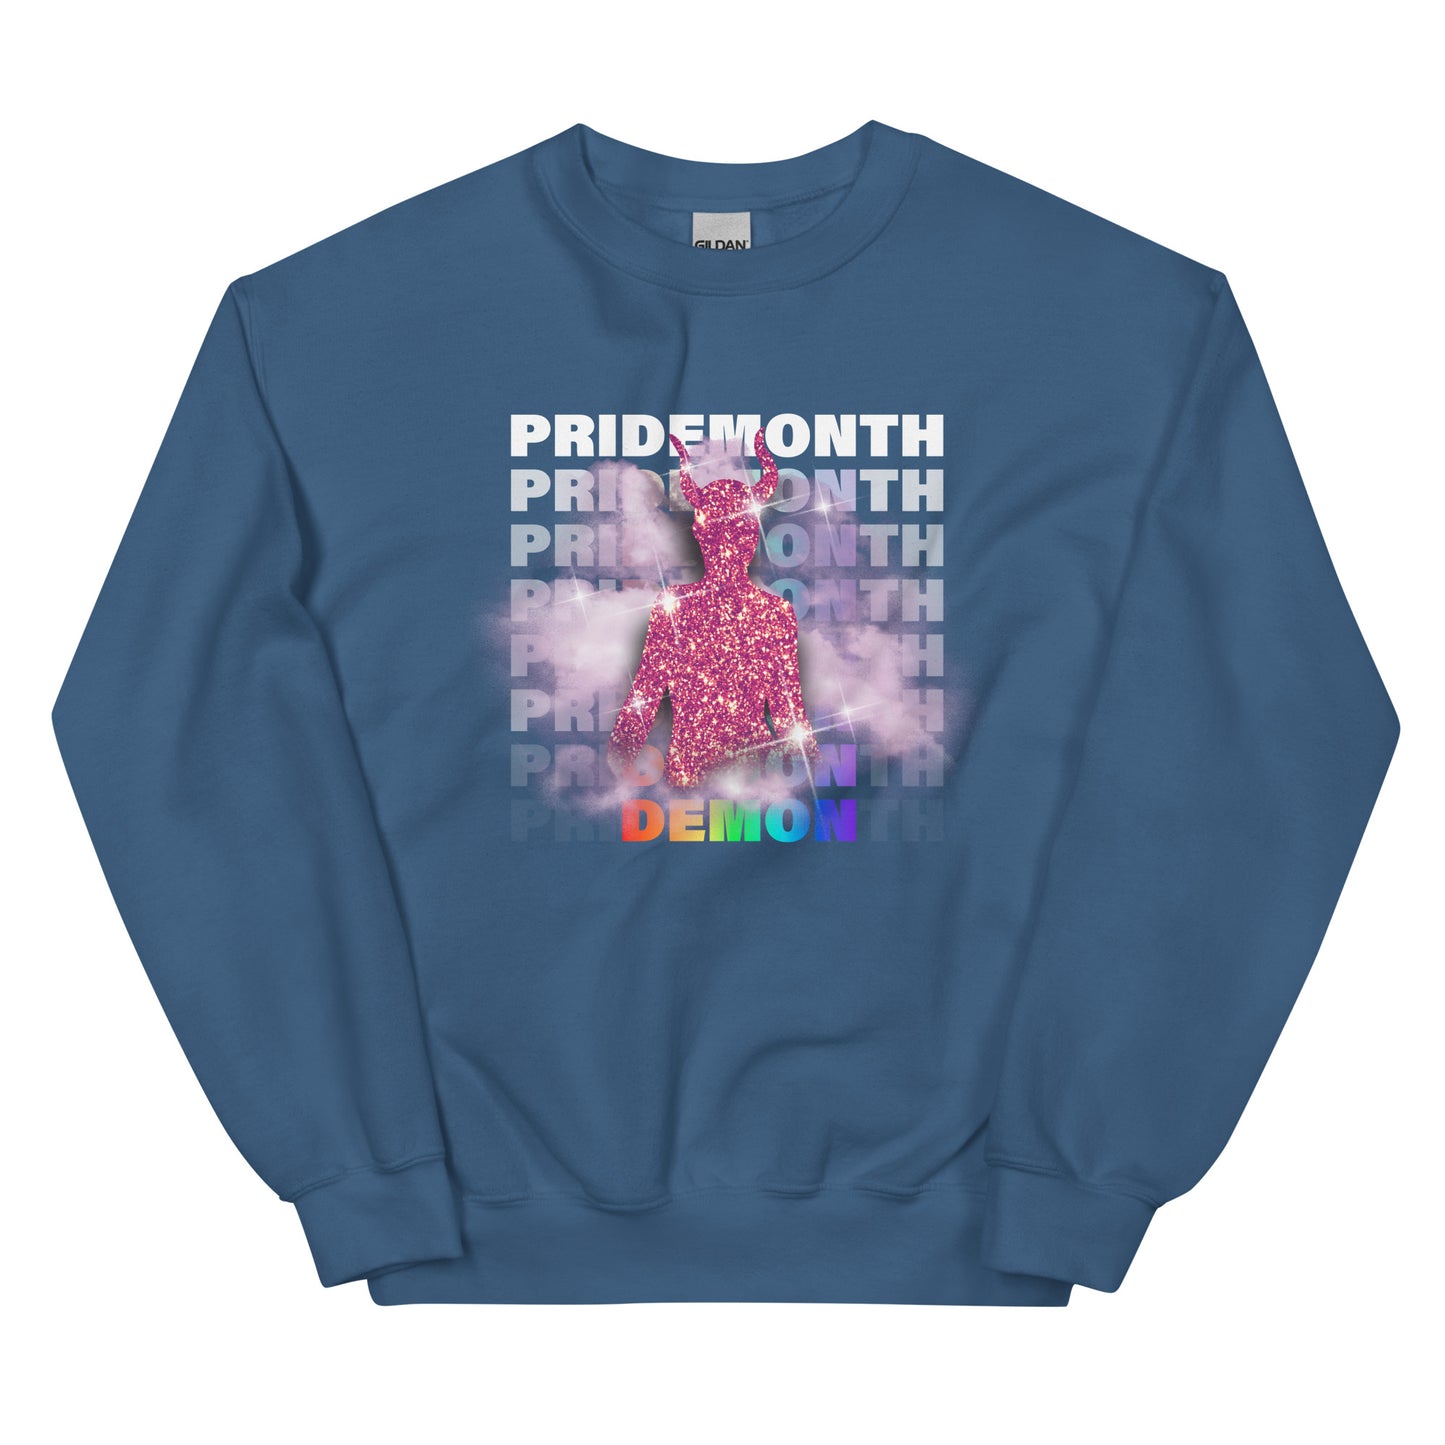 PRIDEMONTH (DEMON) Unisex Sweatshirt